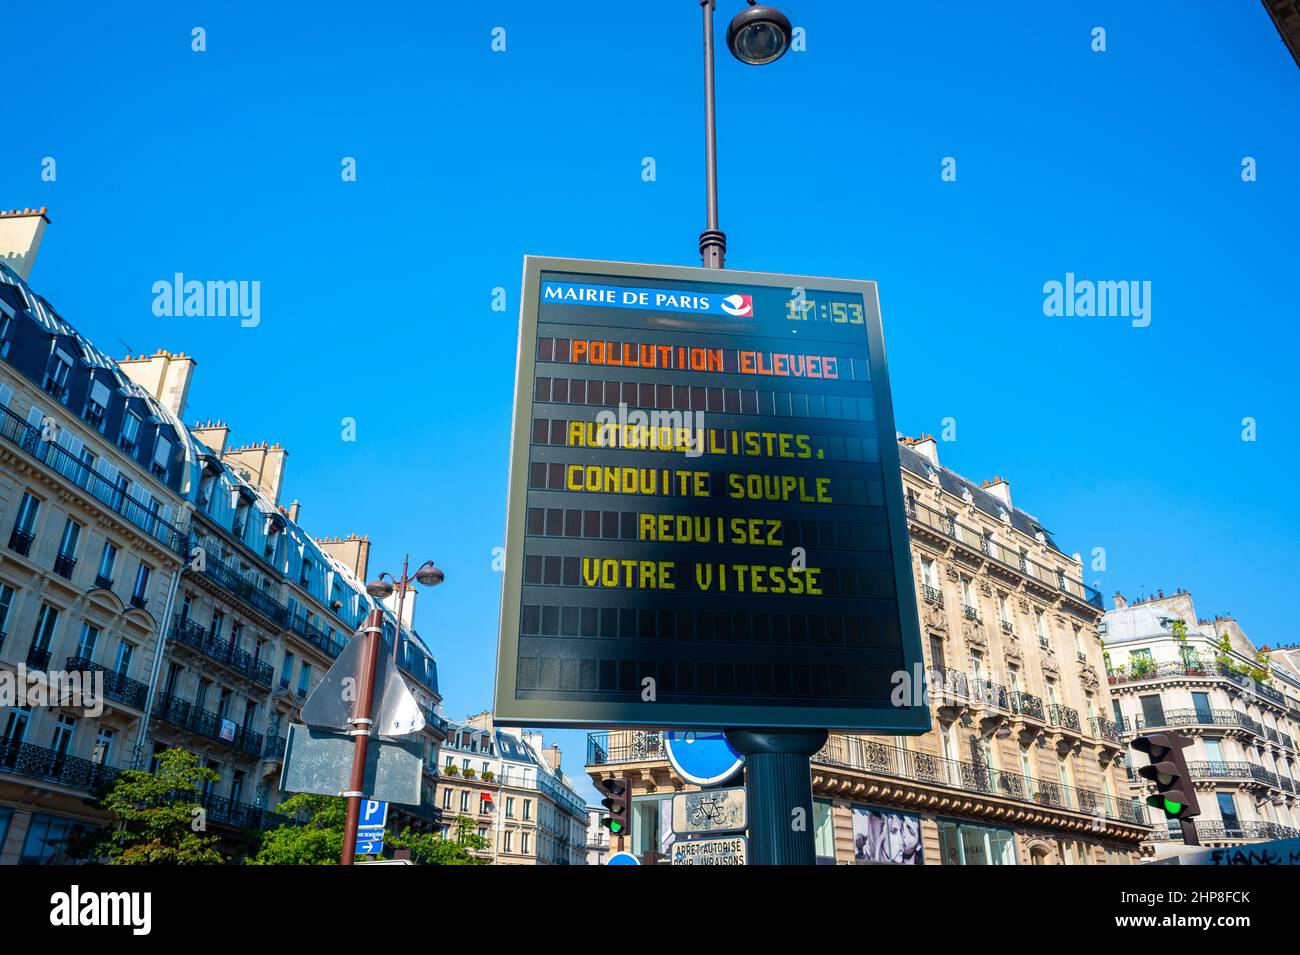 Paris, France, Detail, Panneaux Lumineux information, Mairie de Paris, Pollution Report Stock Photo